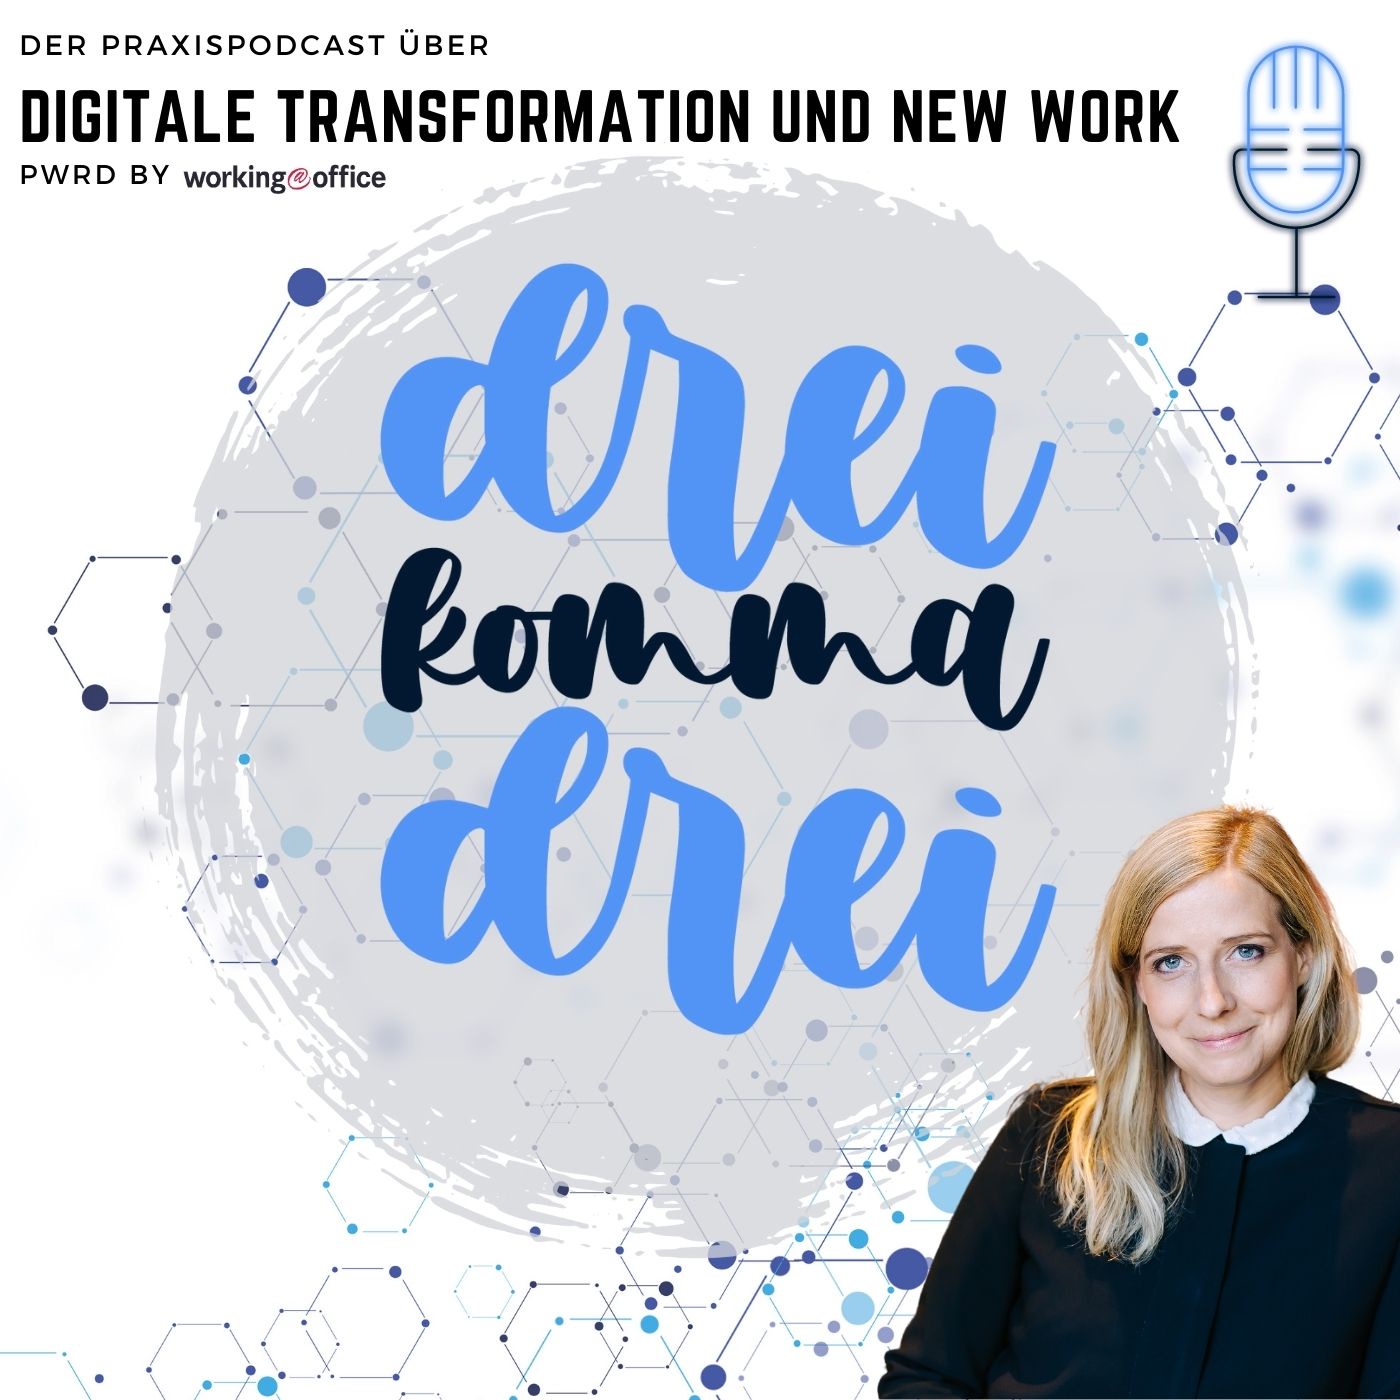 dreikommadrei - der Praxispodcast zu digitaler Transformation und New Work